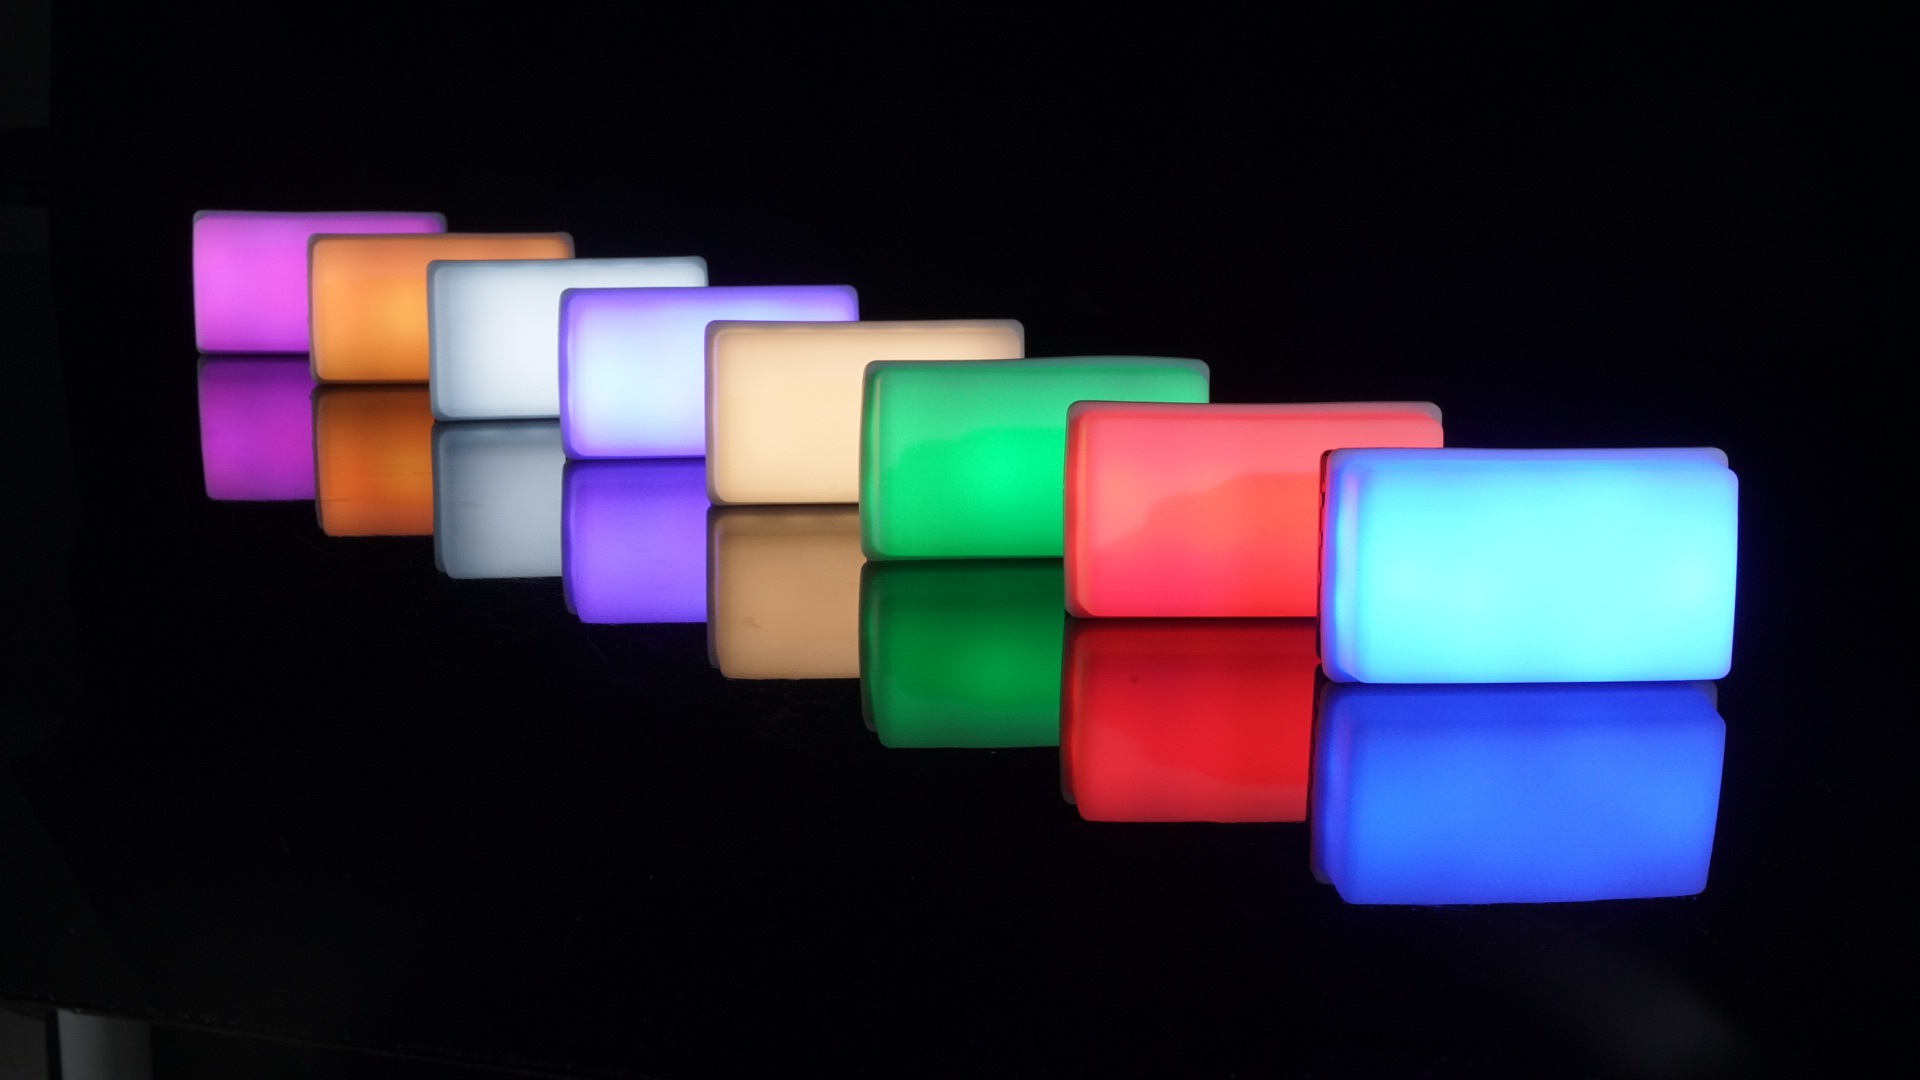 Nanlite LitoLite 5C - RGBWW Pocket-Sized LED Light Introduced | CineD